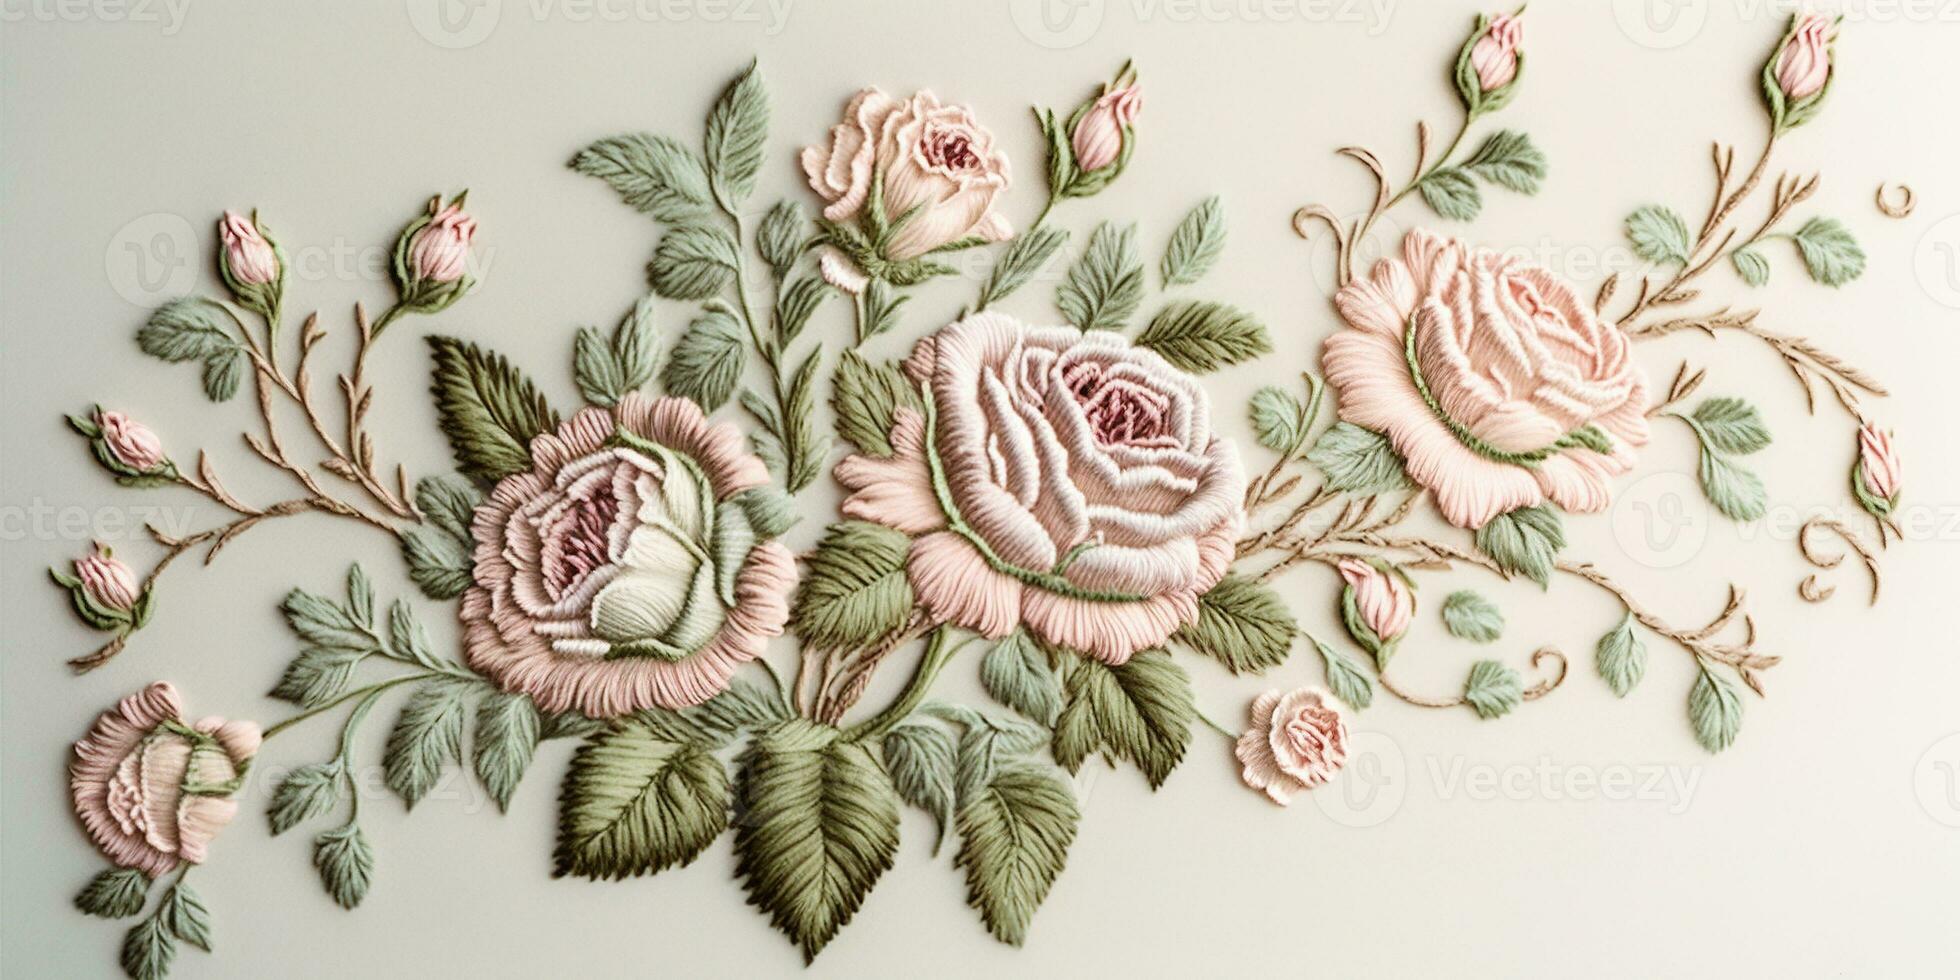 generativo ai, bordado desgastado elegante barroco ligero rosado rosas modelo. floral impresión en seda antecedentes foto